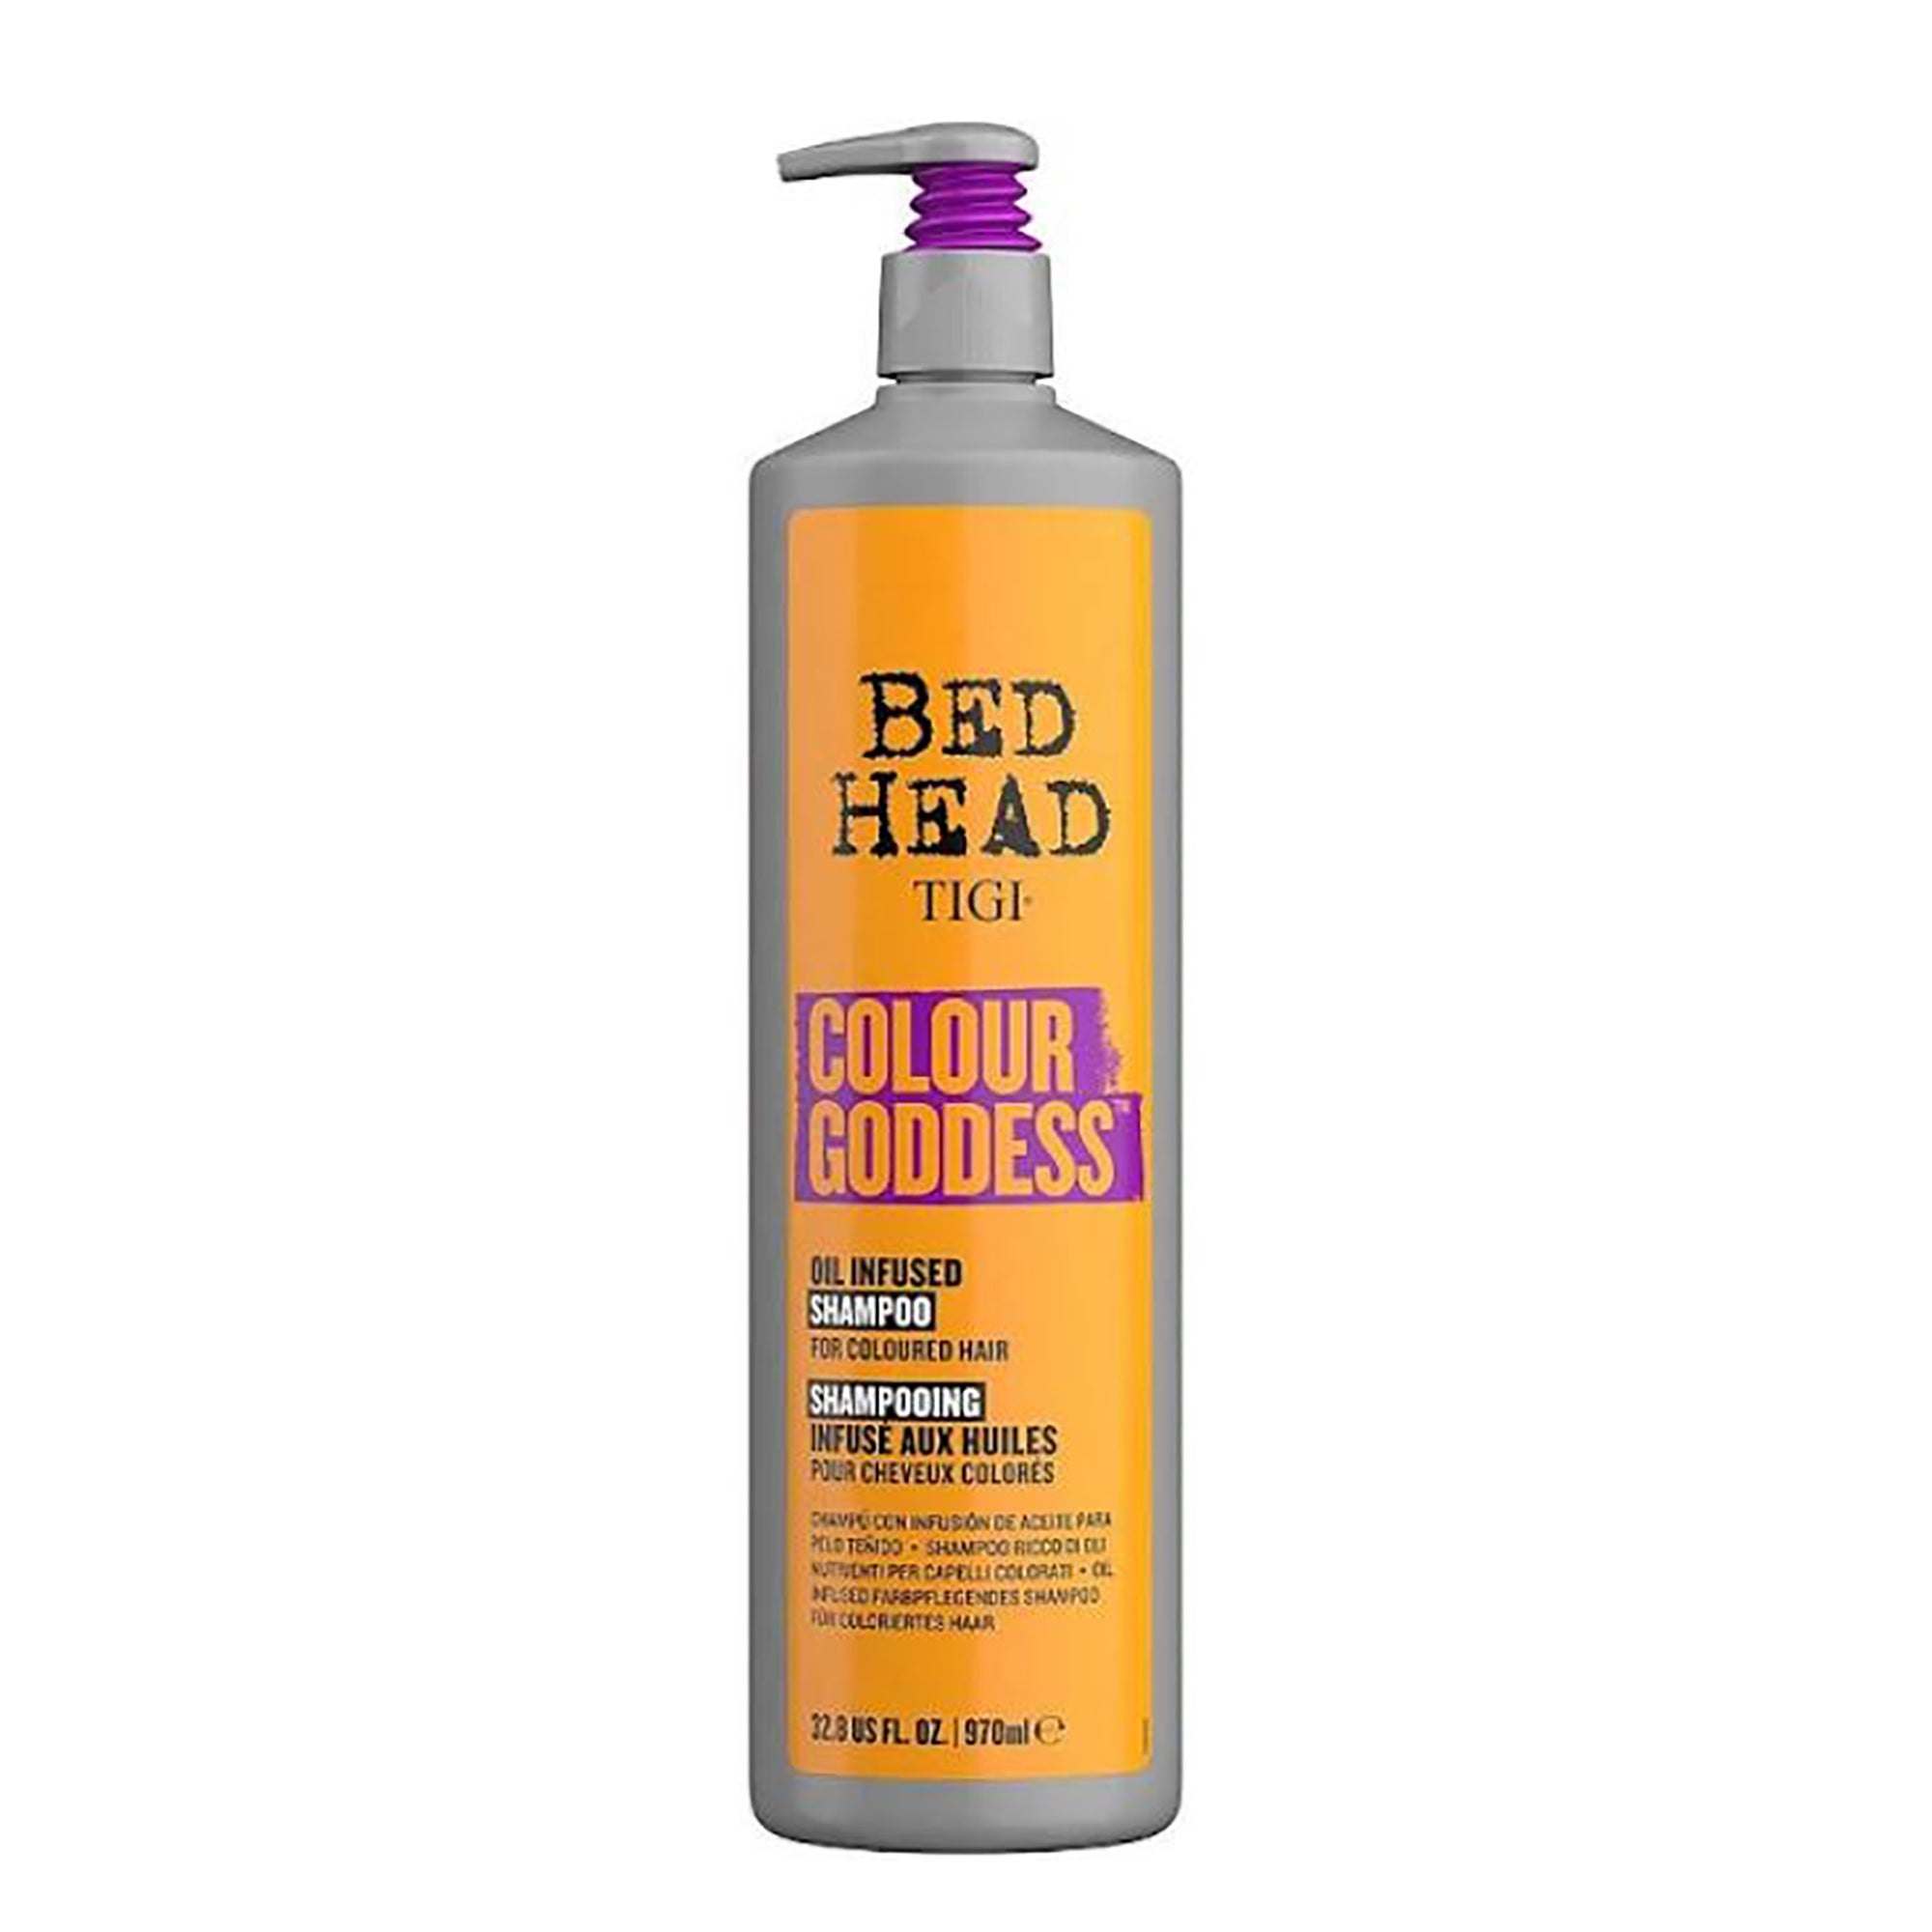 TIGI Bed Head Colour Goddess Oil Infused Shampoo / 33OZ